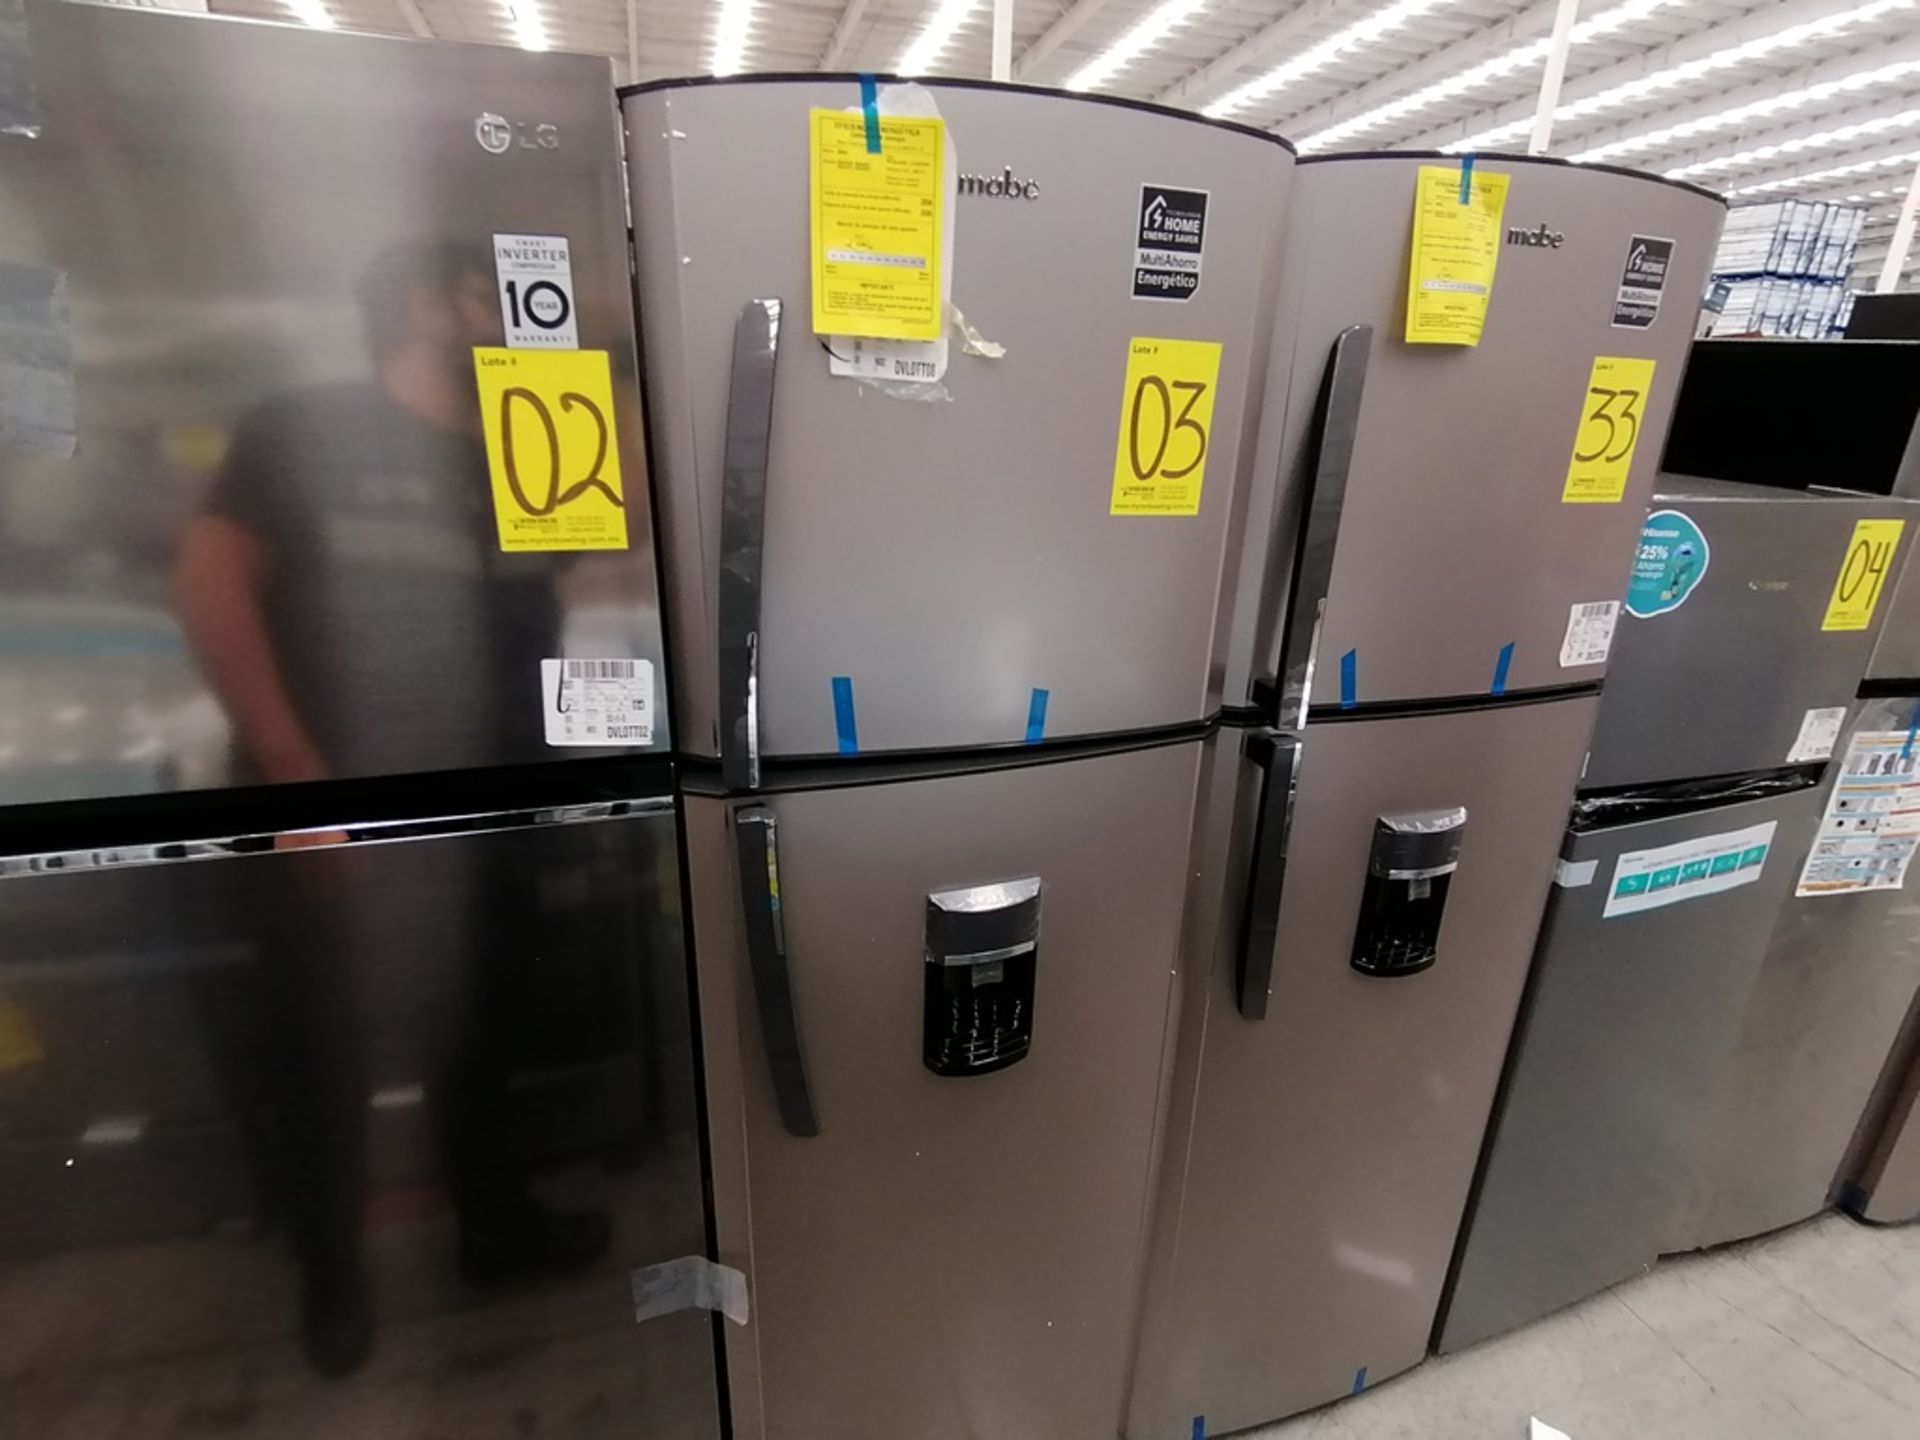 1 Refrigerador con Dispensador de Agua Marca Mabe, Color Gris, Modelo RMA300FJMR, Serie 2112B707142 - Image 3 of 13